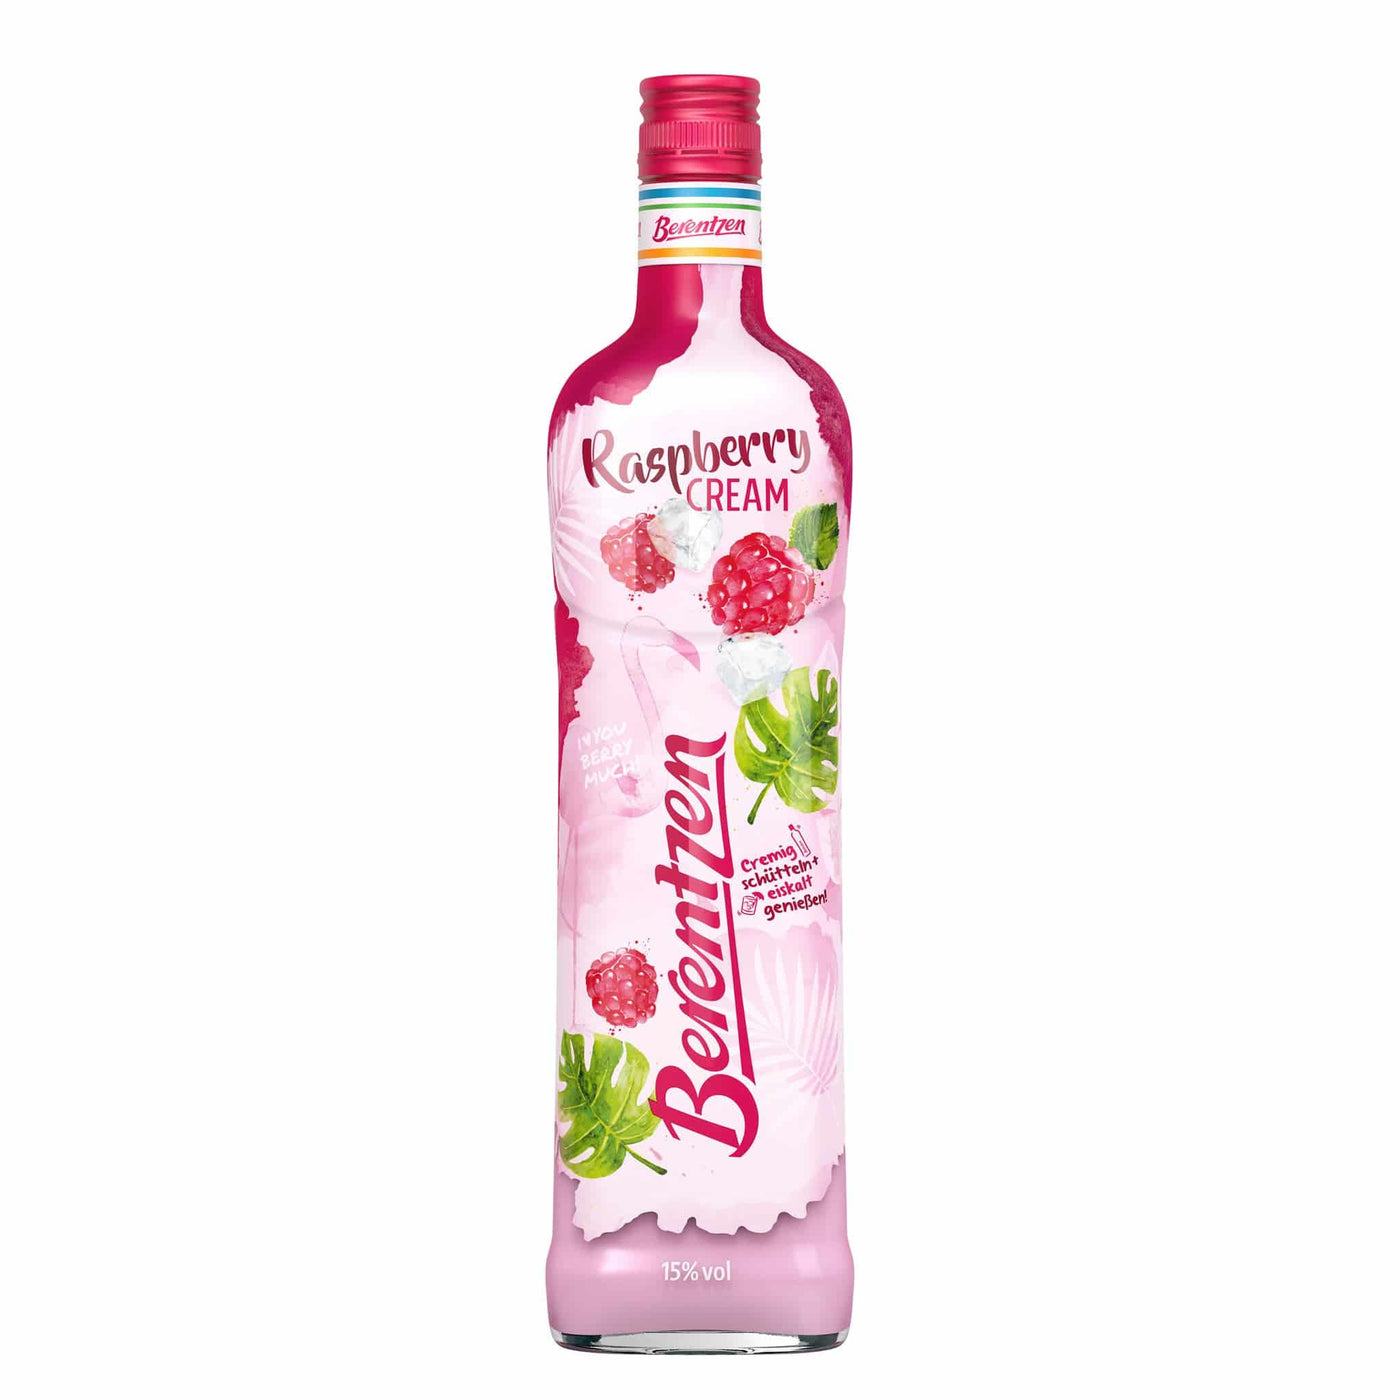 Berentzen Raspberry Cream - Spiritly